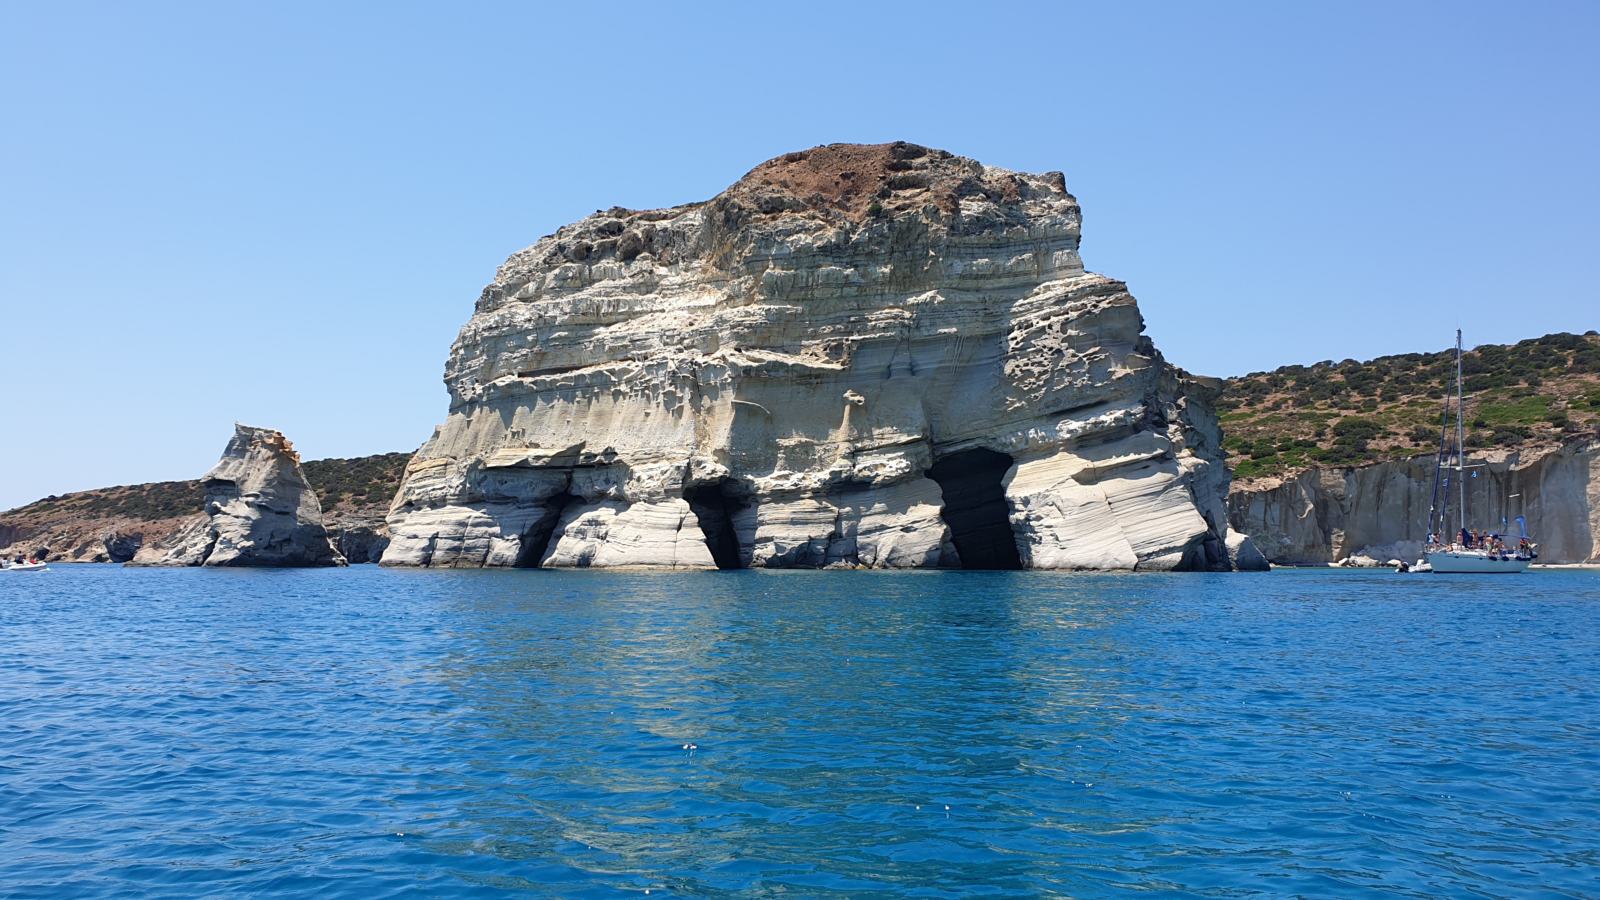 Le grotte dei pirati - Kleftiko - Milos